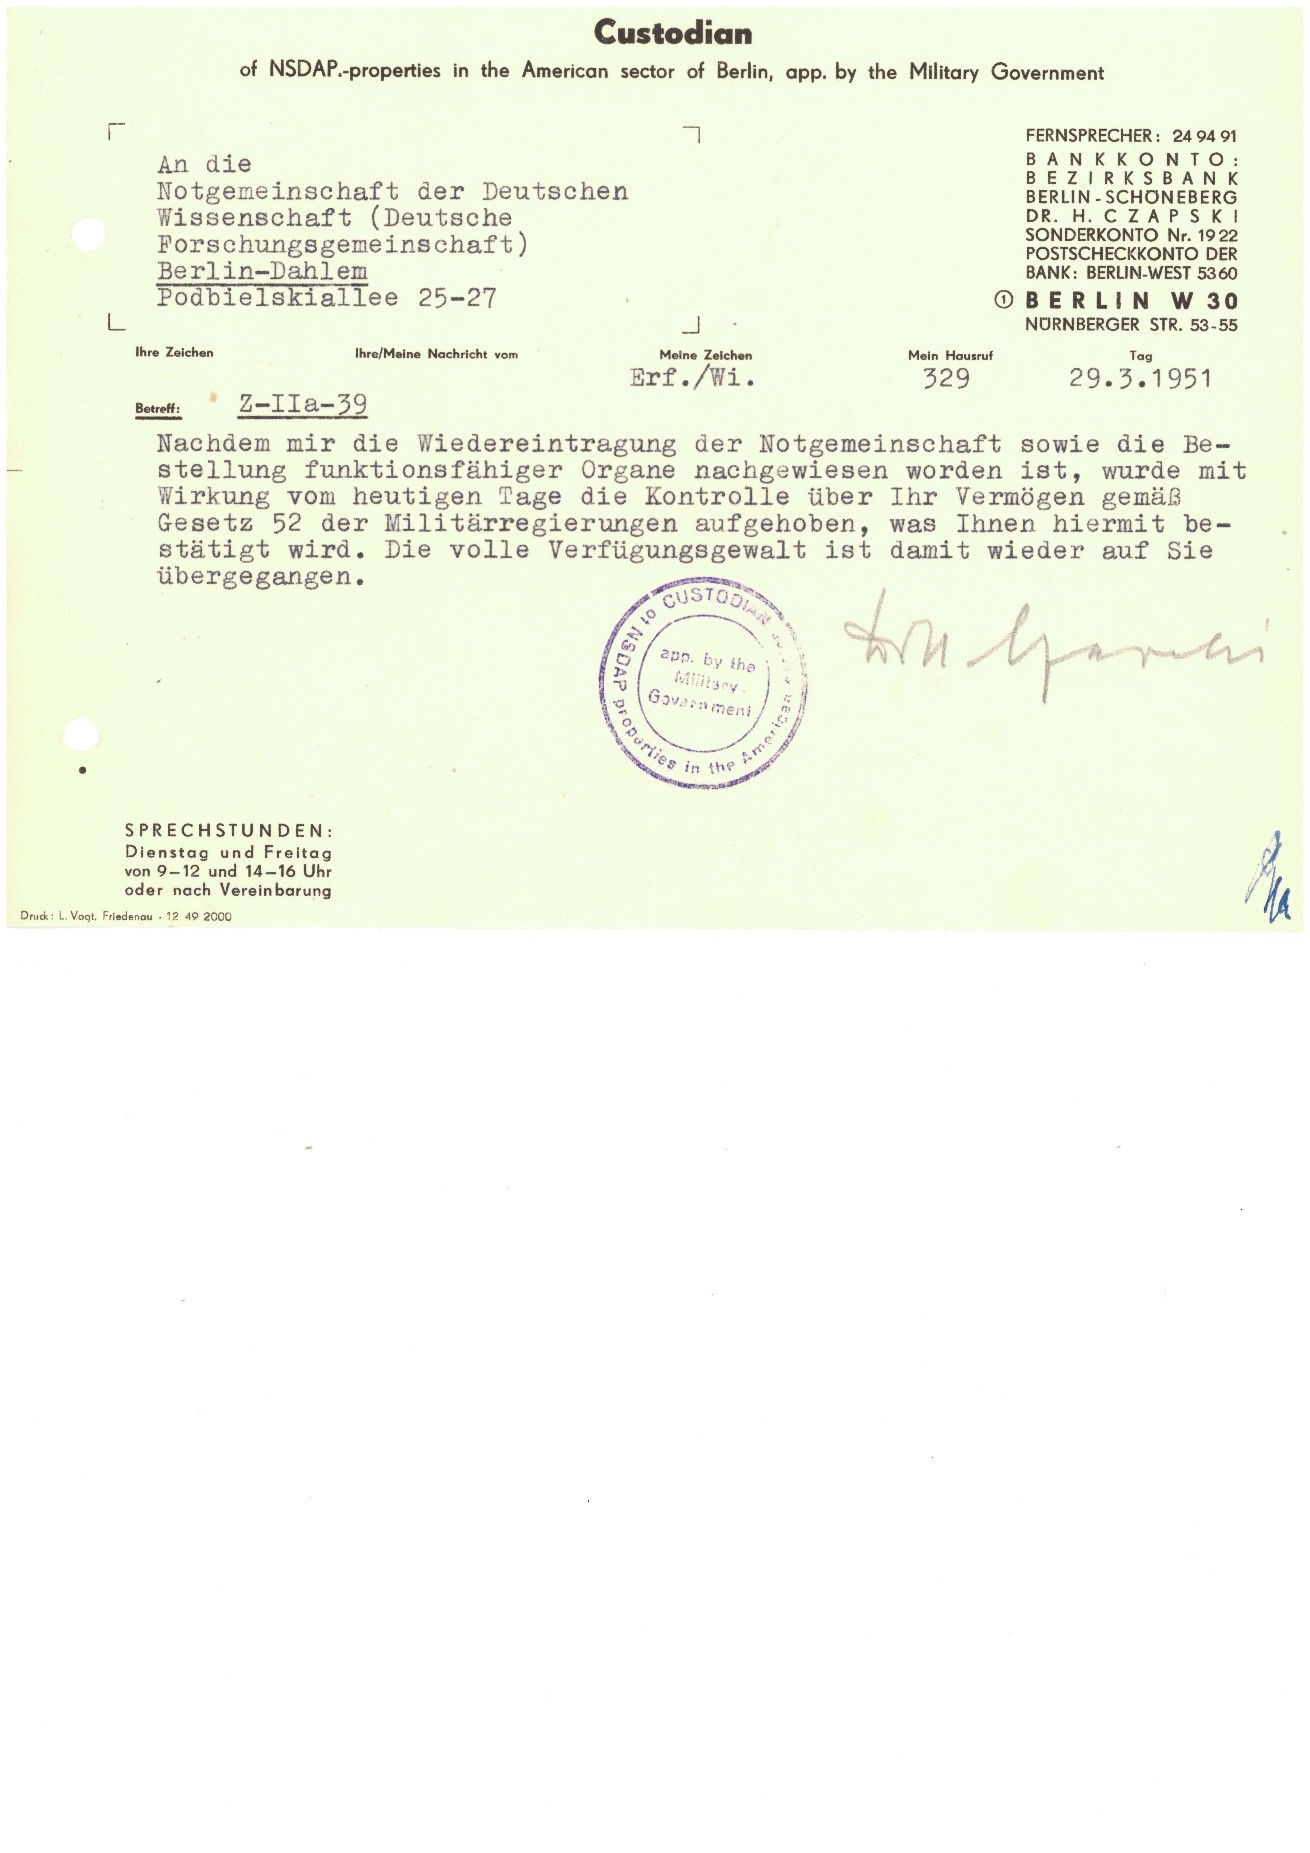 Aufhebung der Vermögenskontrolle durch die Treuhänderschaft am 29.3.1951